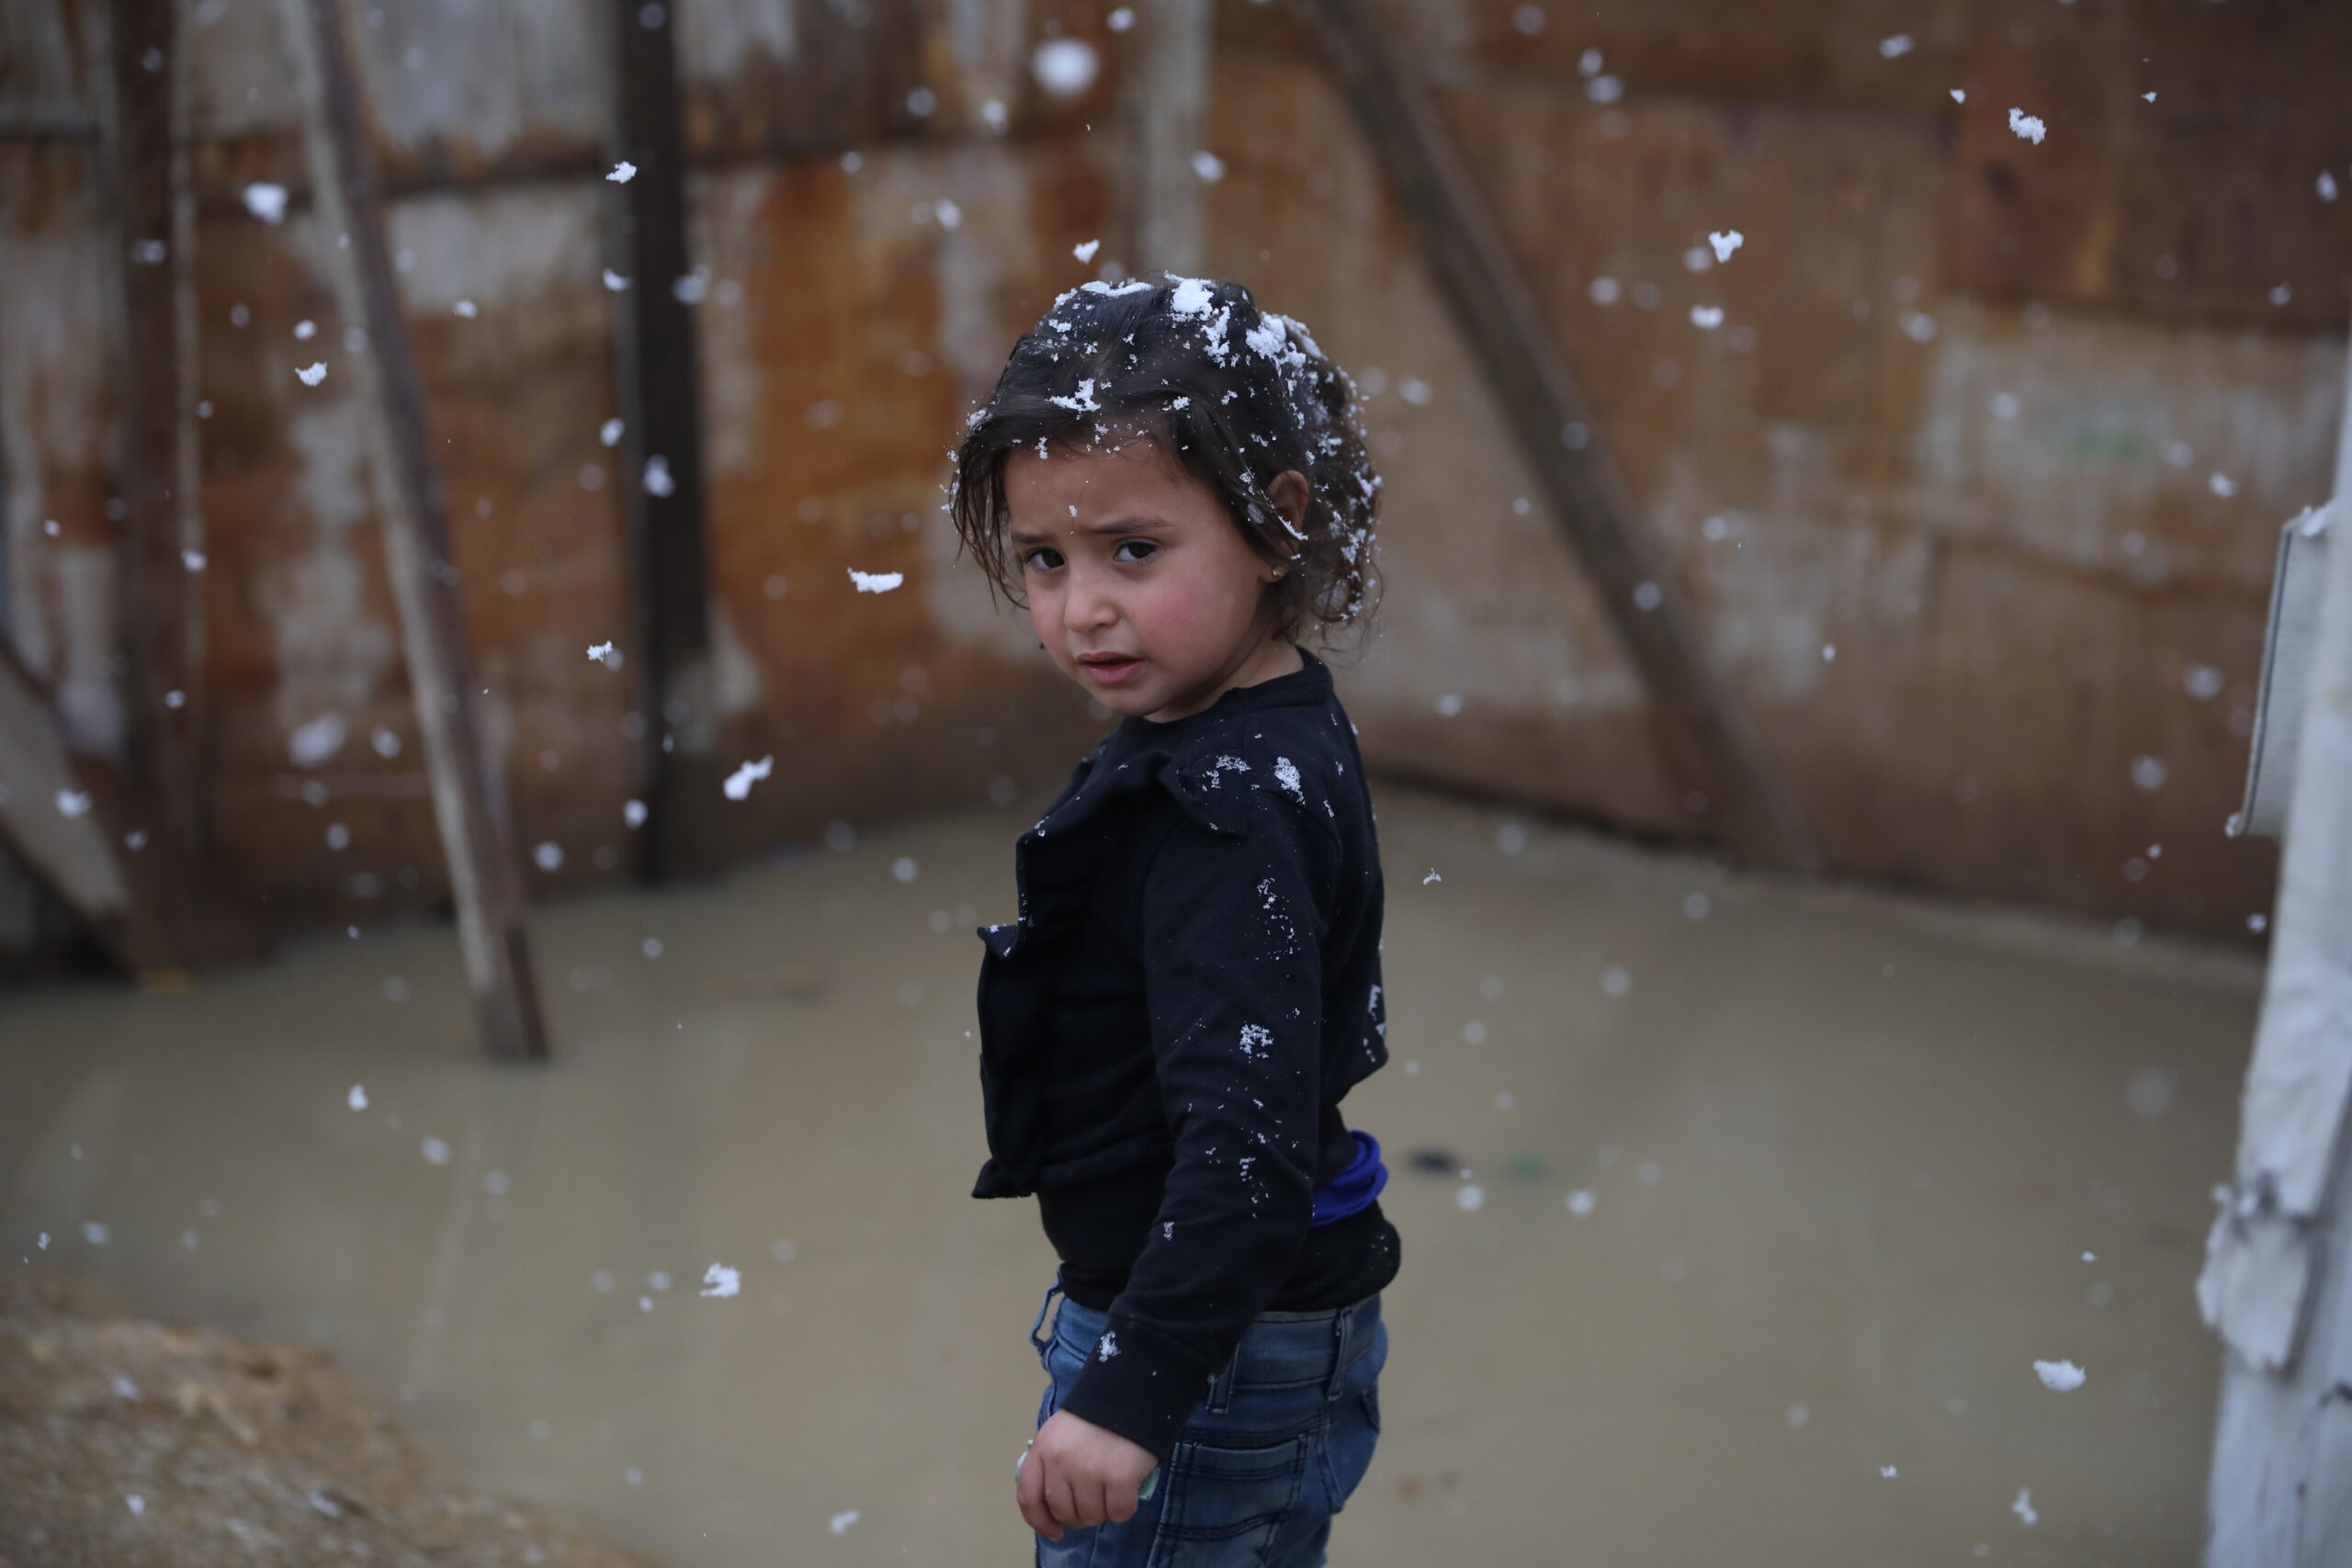 Meisje in Libanon tijdens sneeuwstorm, februari 2022. © UNHCR/Houssam Hariri